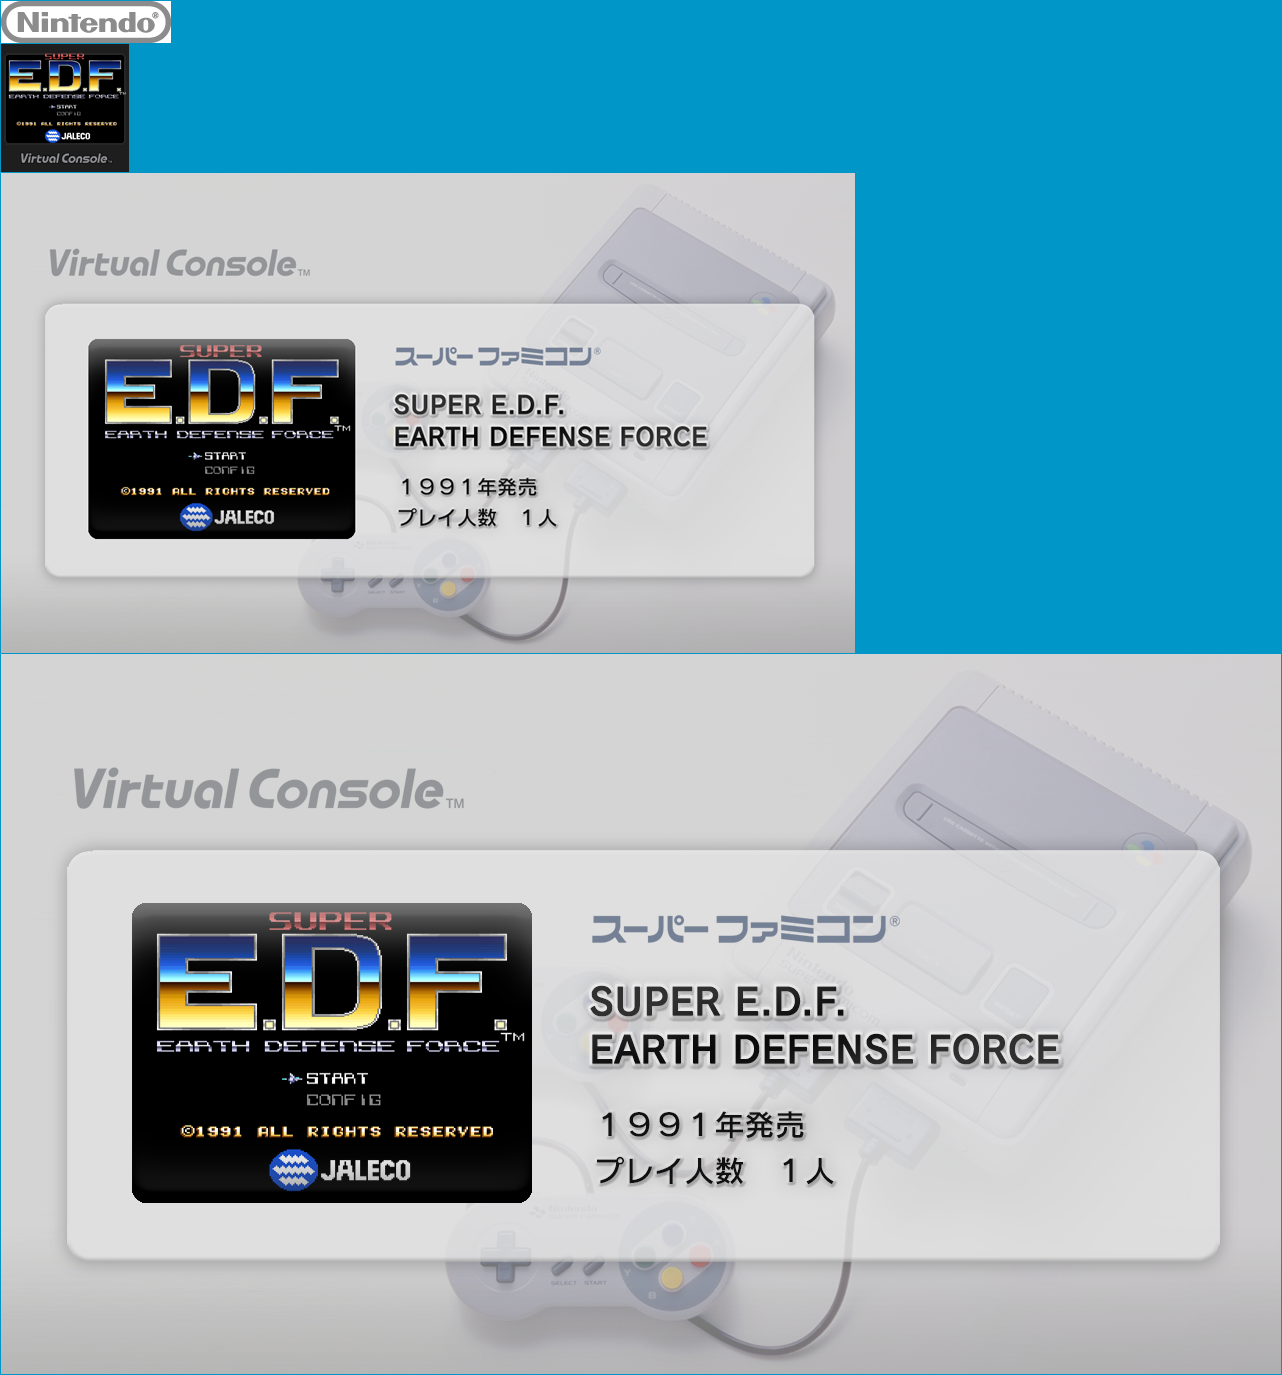 SUPER E.D.F.: EARTH DEFENSE FORCE